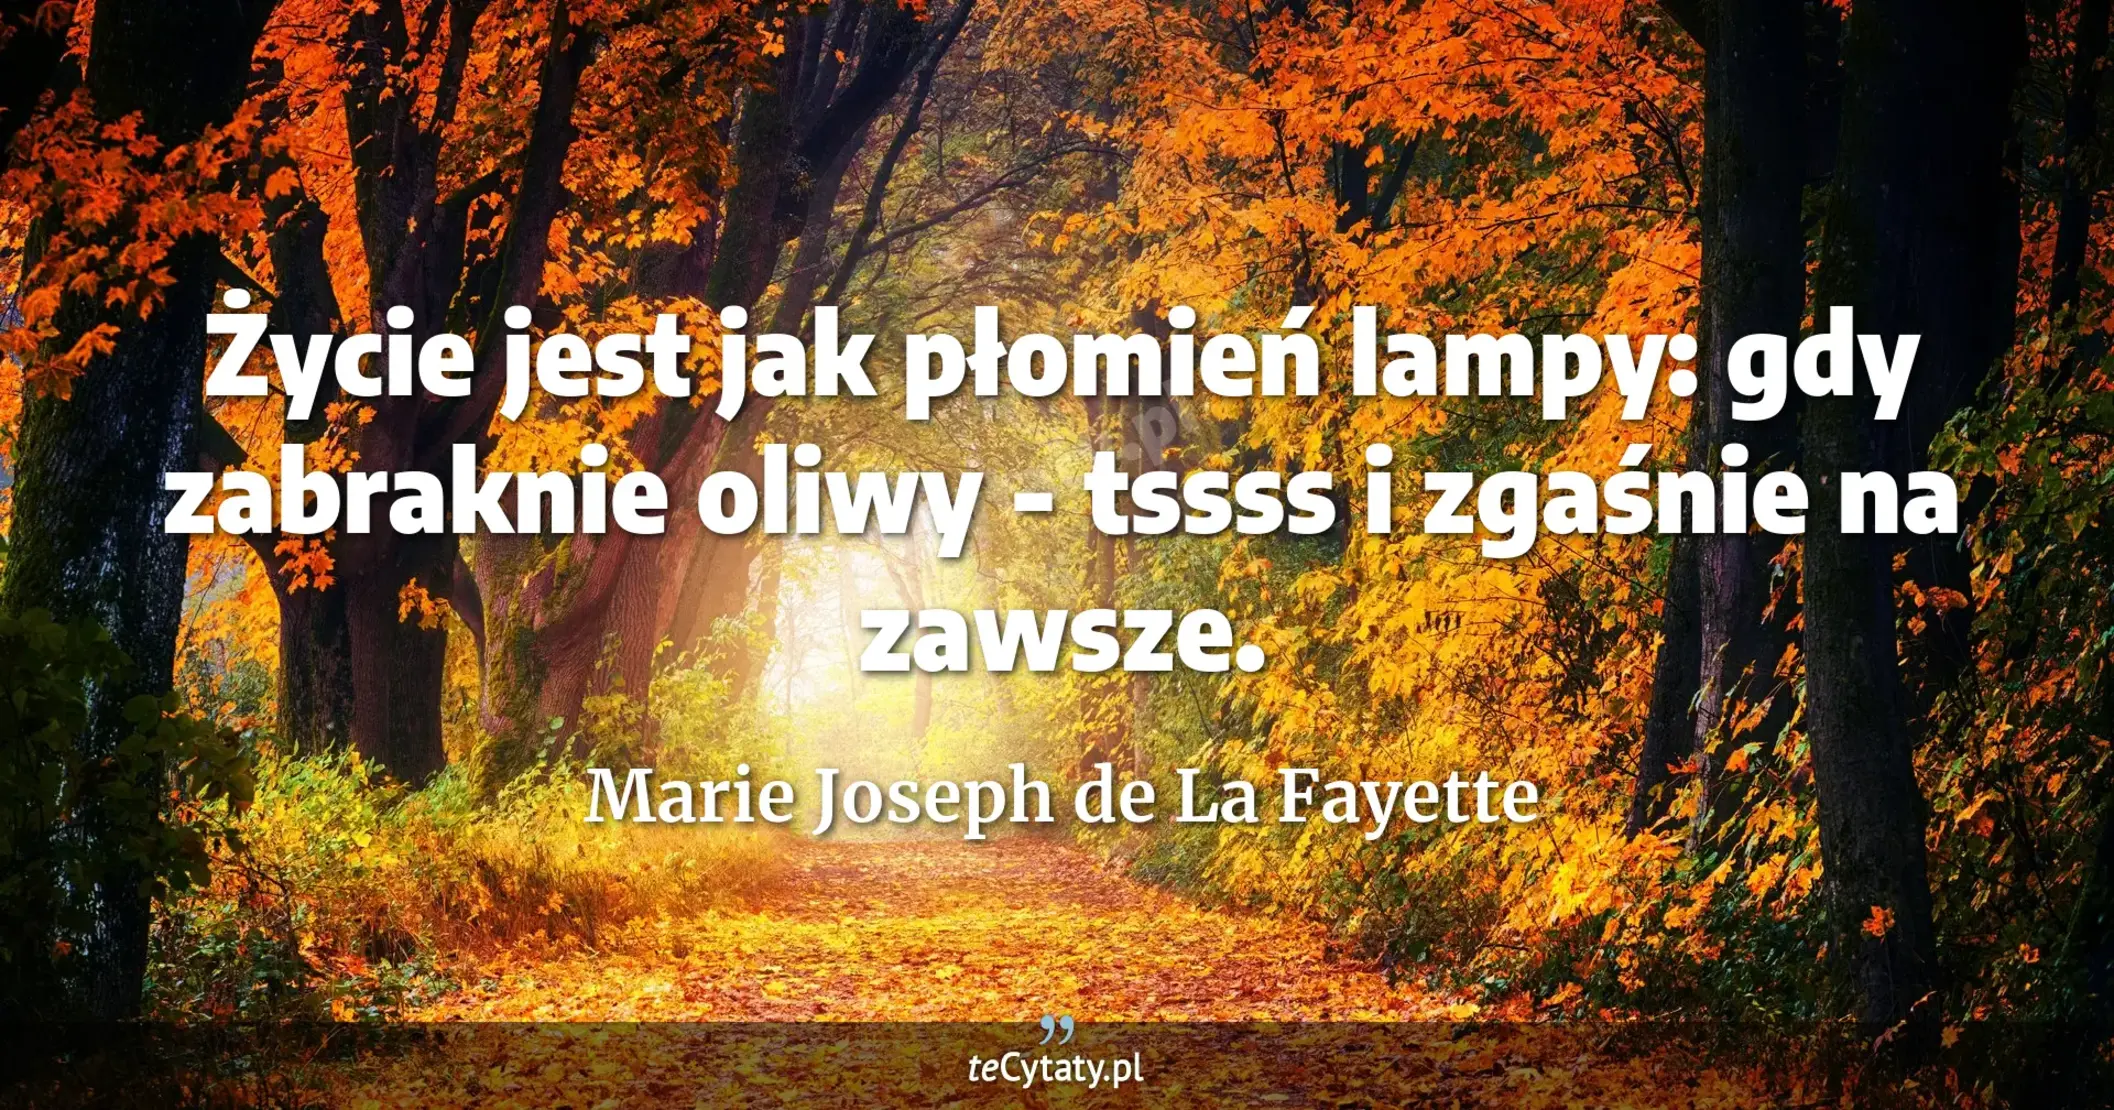 Życie jest jak płomień lampy: gdy zabraknie oliwy - tssss i zgaśnie na zawsze. - Marie Joseph de La Fayette